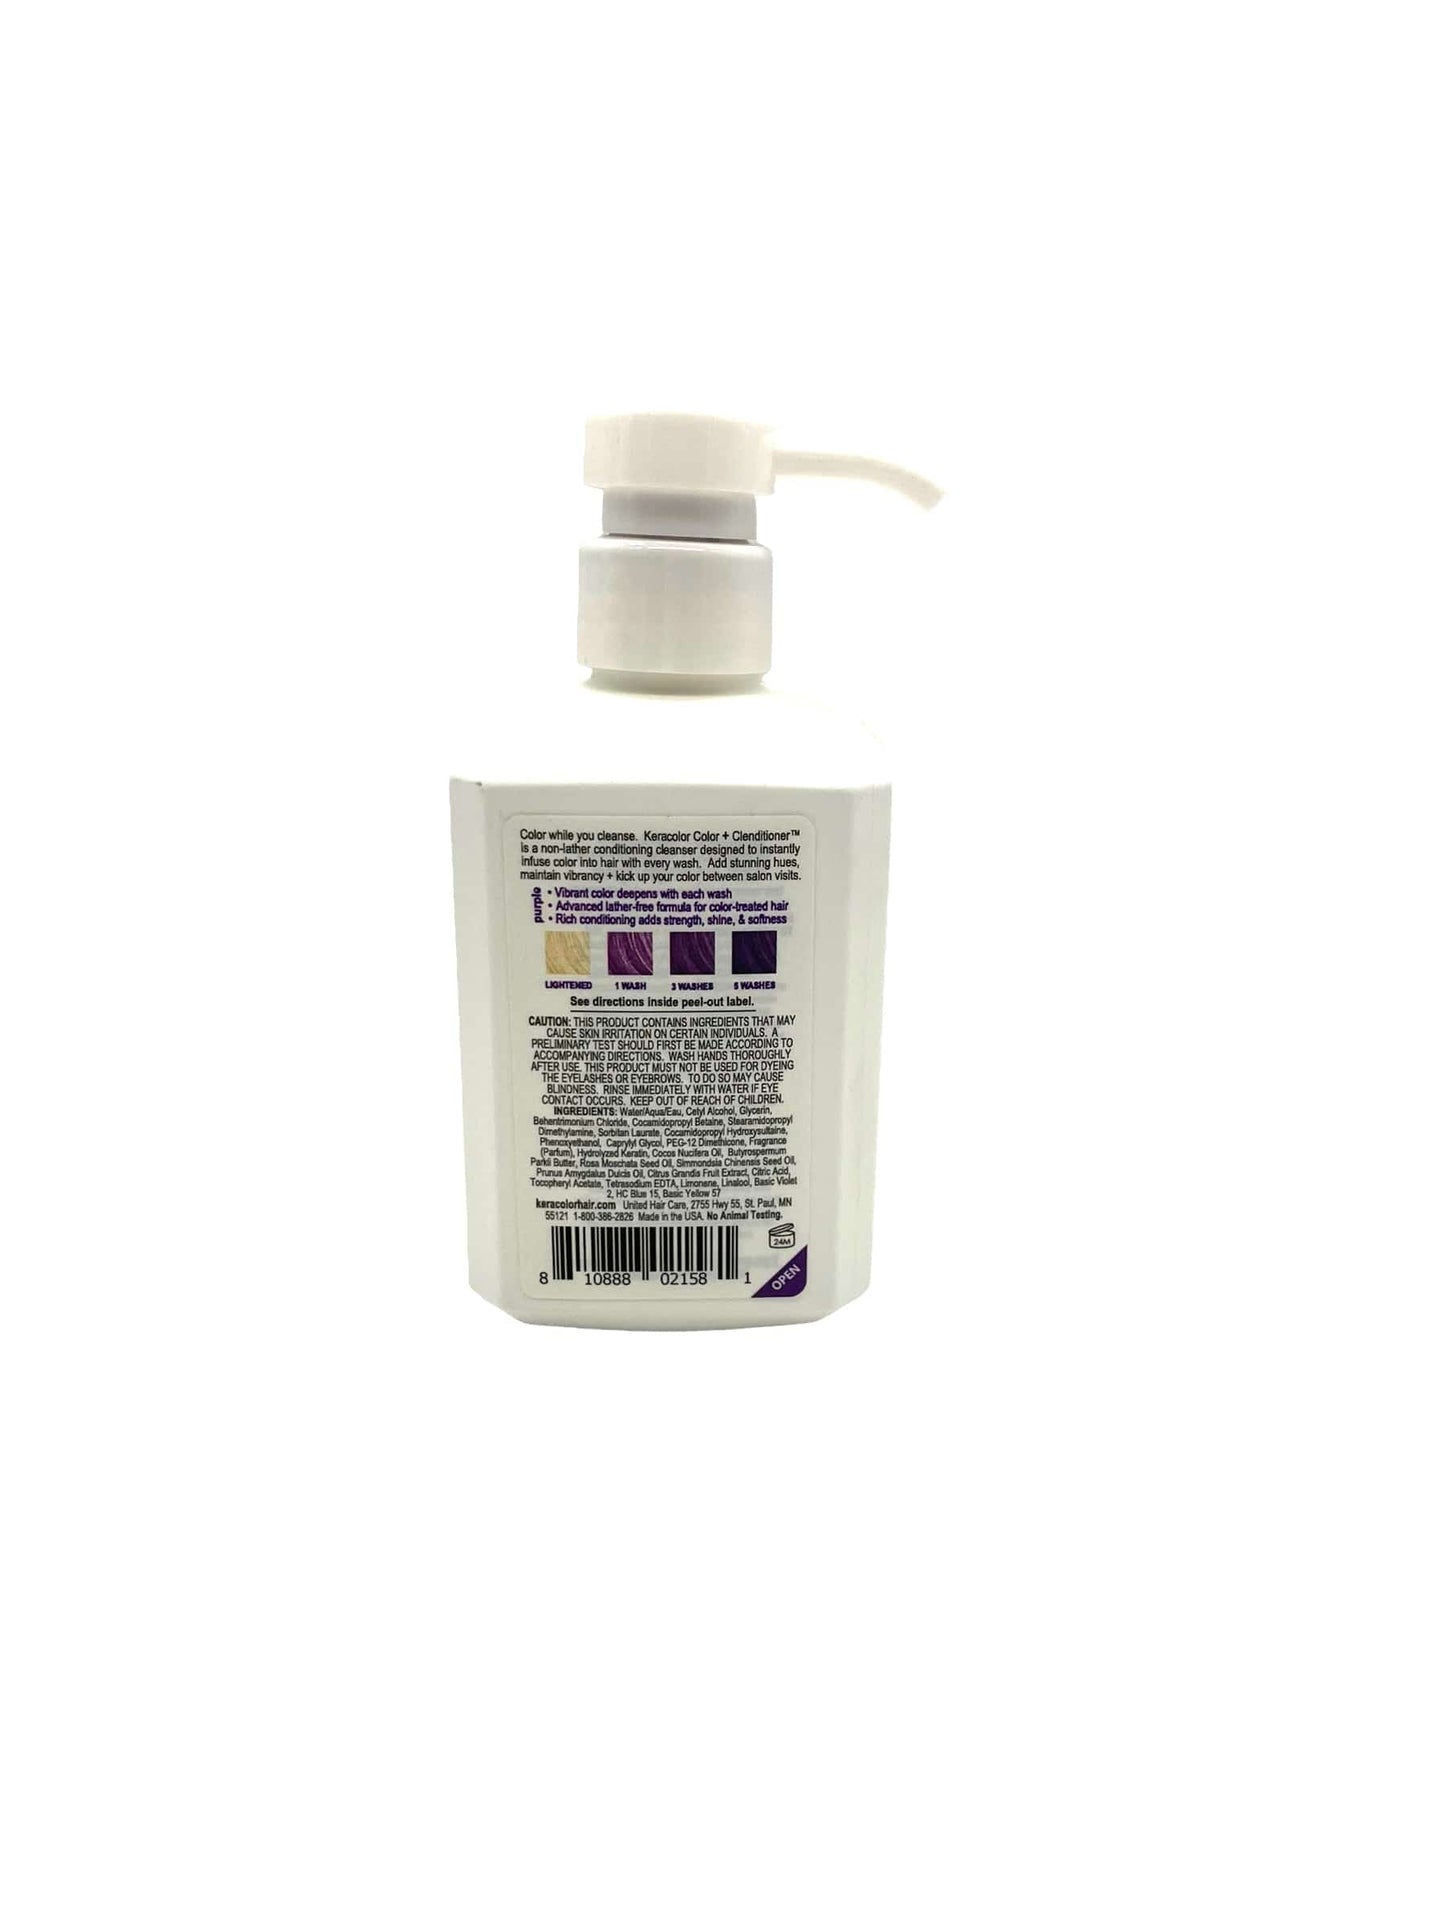 Keracolor Clenditioner Purple 12 oz Shampoo & Conditioner